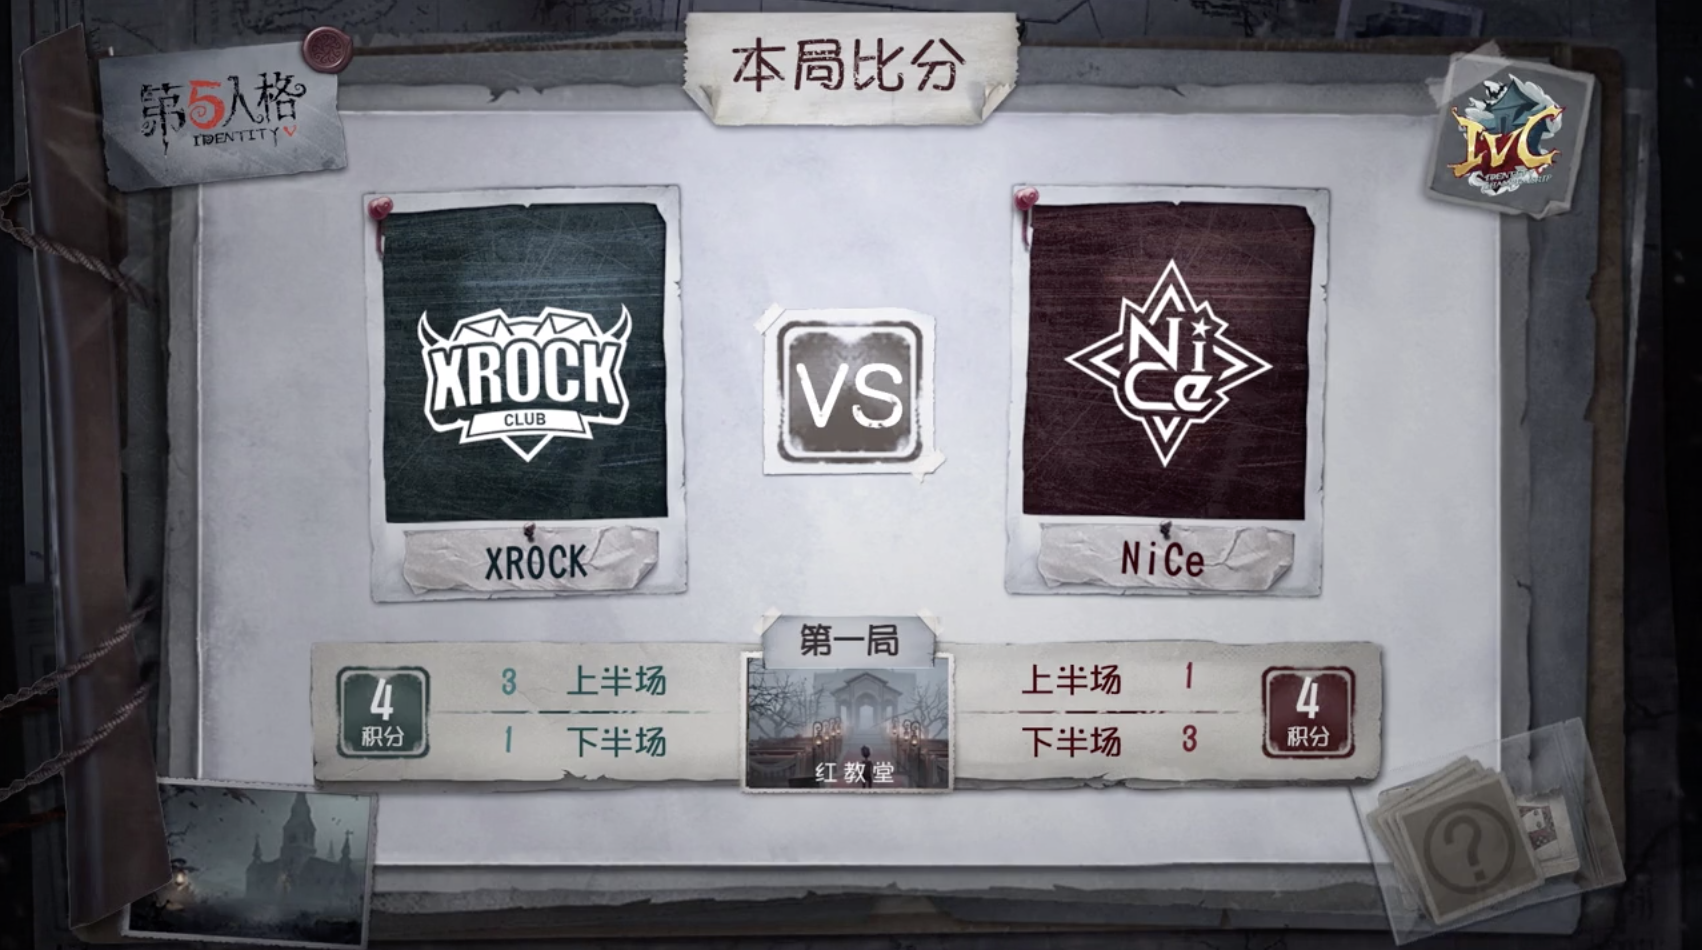 10月20日 XROCK vs NiCe小组赛BO3第一局